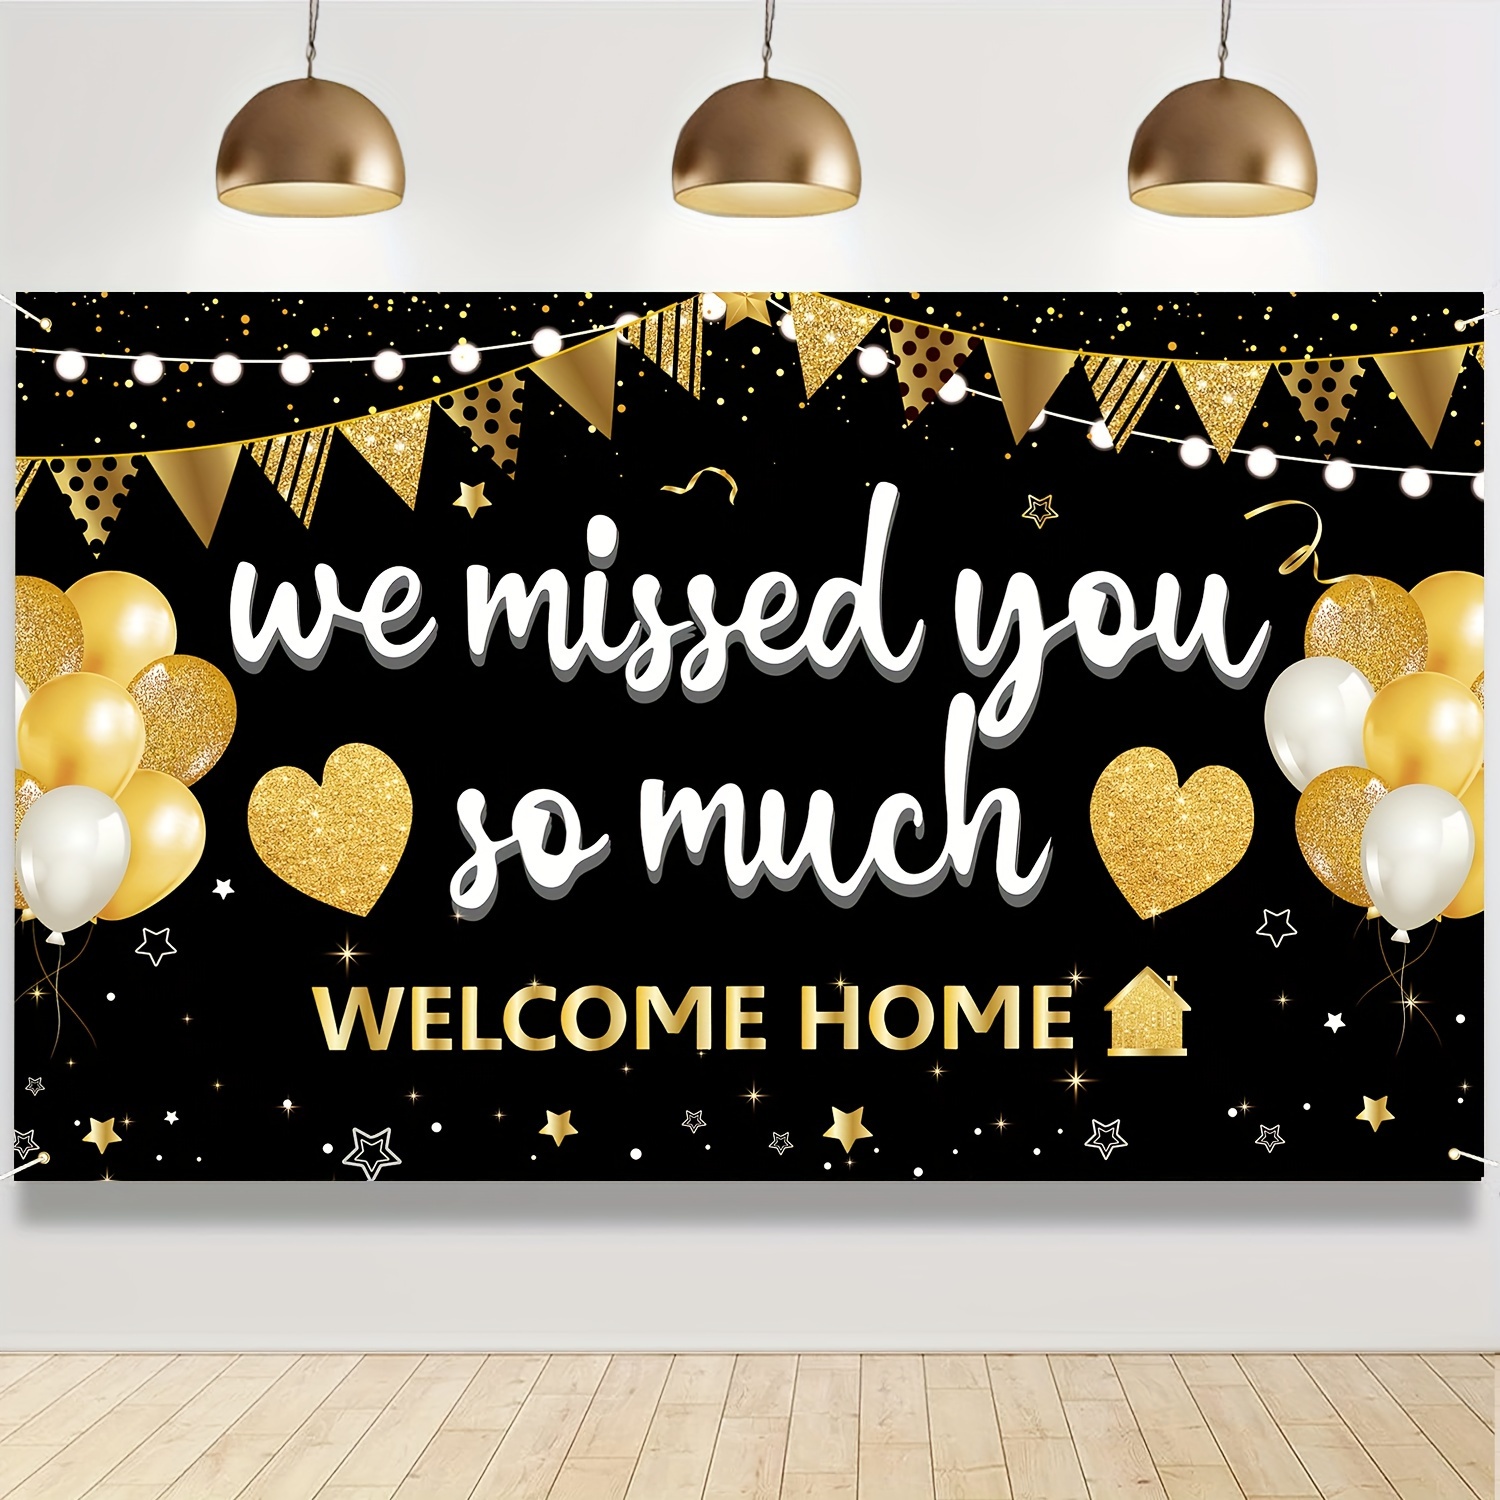 Home Sweet Home - Decoración para tartas - Welcome Home Welcome Back -  Decoración de fiesta de inauguración de la casa, color dorado champán